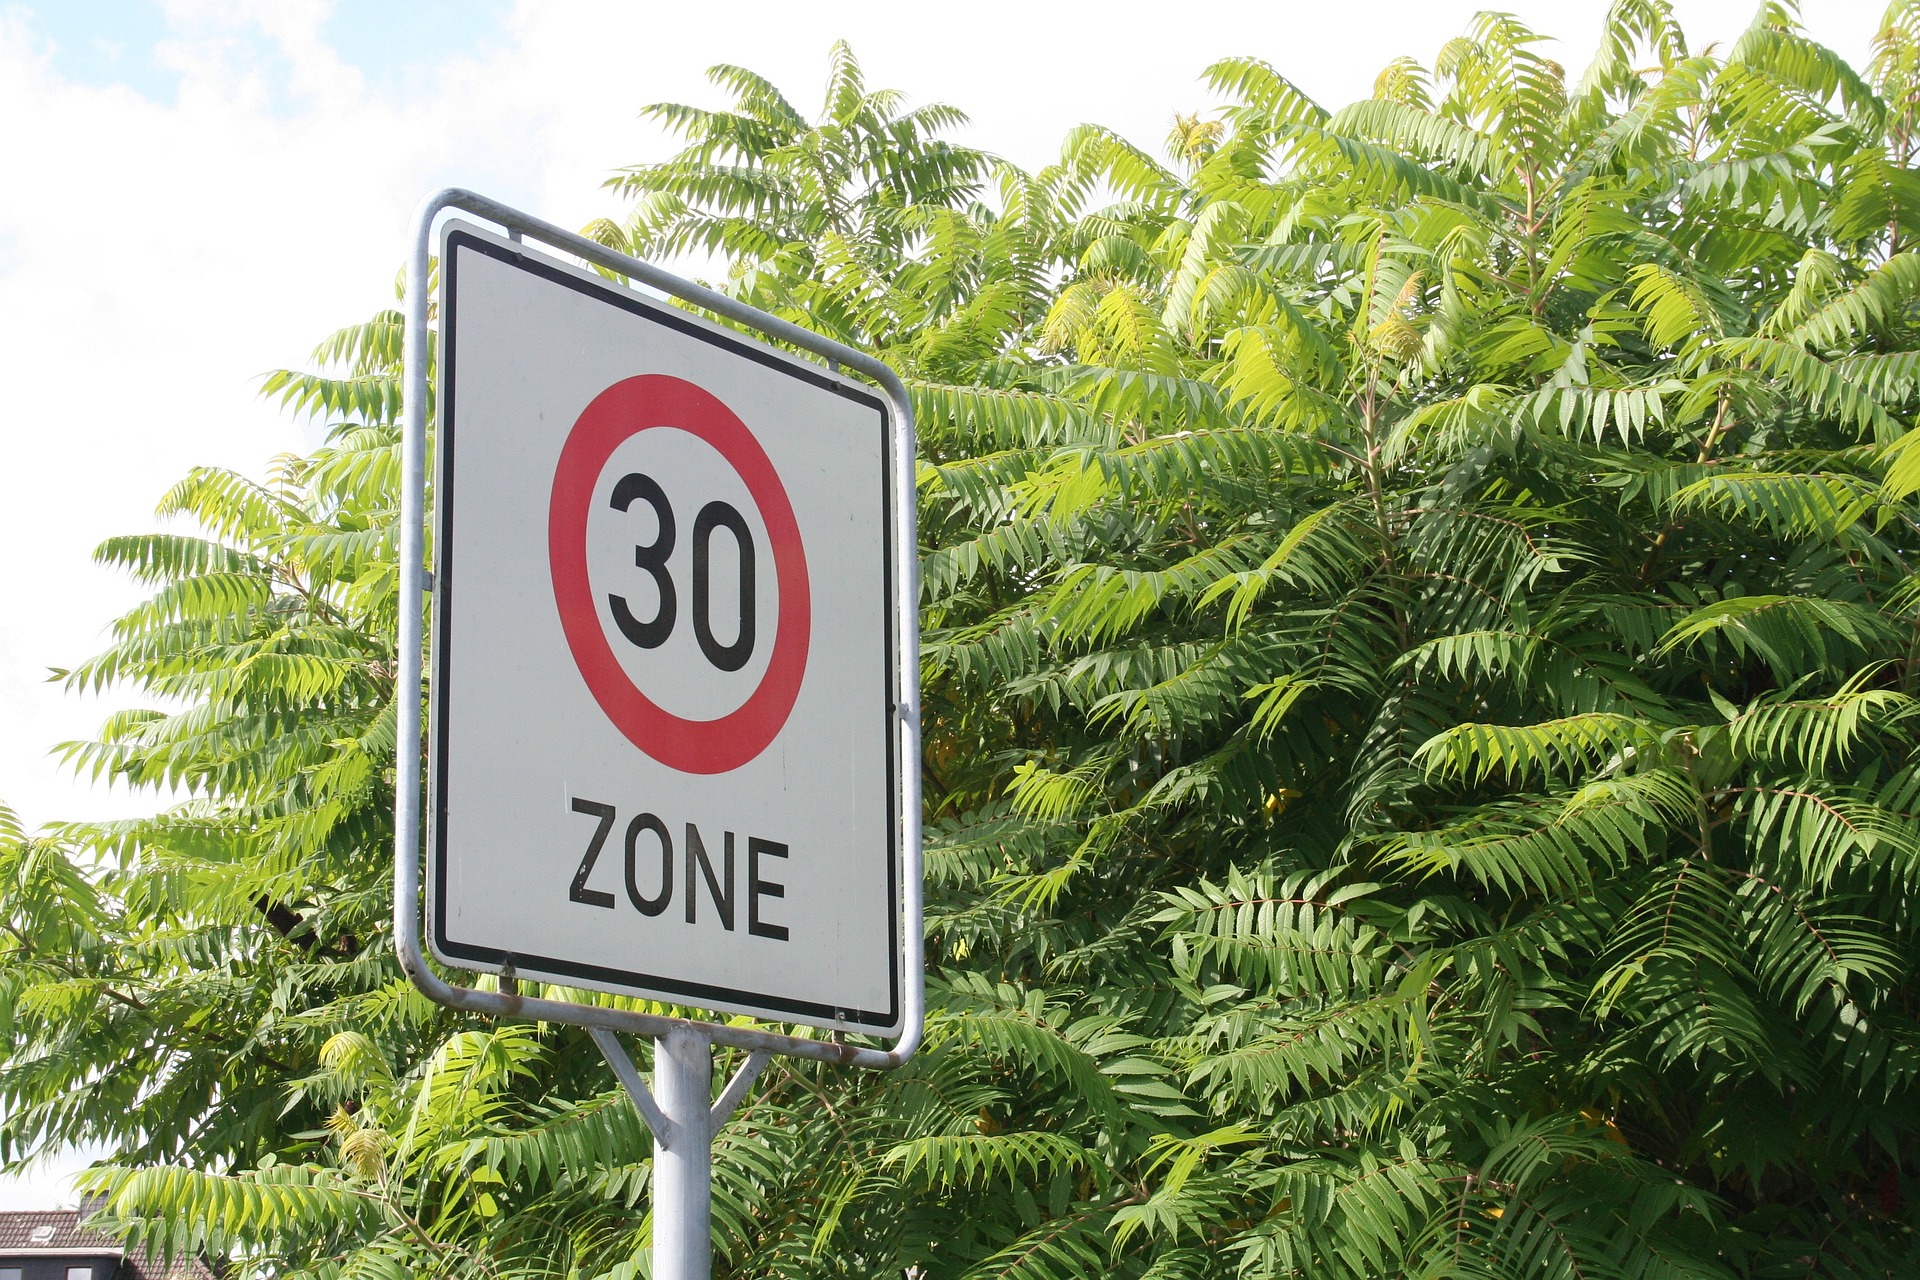 Zone 30 à Libourne